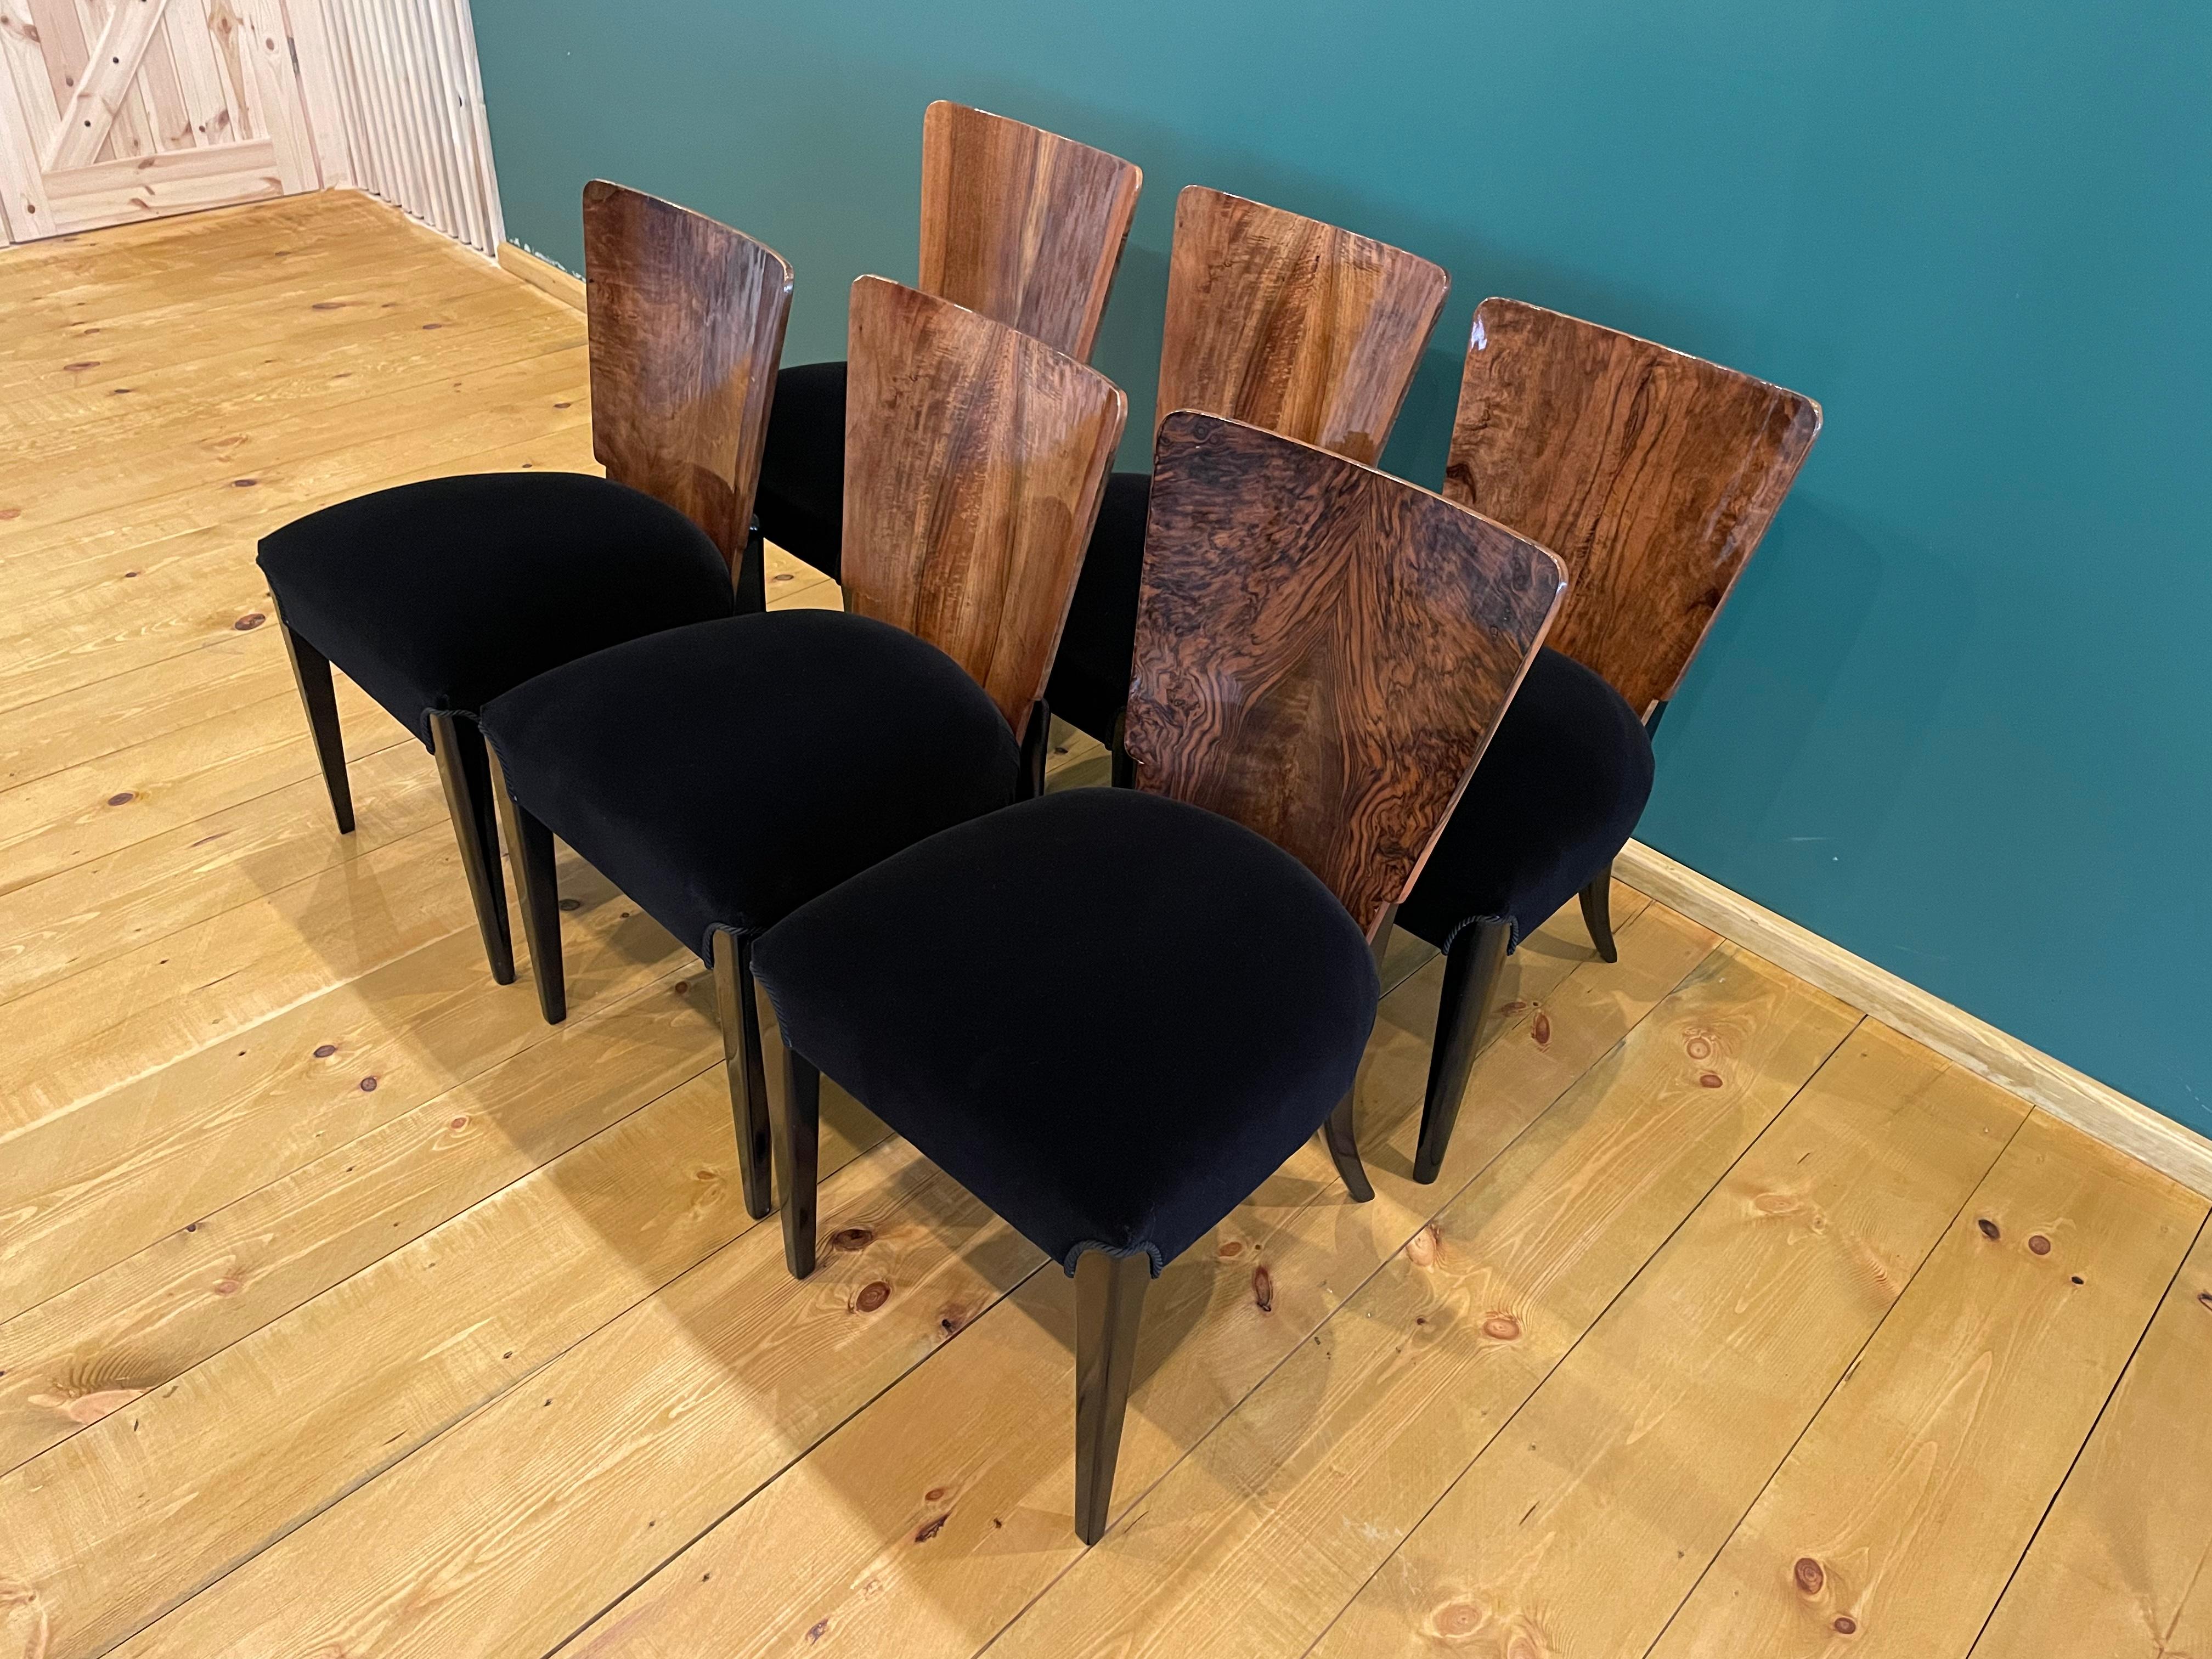 Art Déco quatre chaises de J. Halabala de 1940 nous présentons les chaises de J. Halabala des années 1940 (un designer tchèque classé parmi les créateurs les plus remarquables de la période moderne. L'apogée de sa carrière se situe dans les années